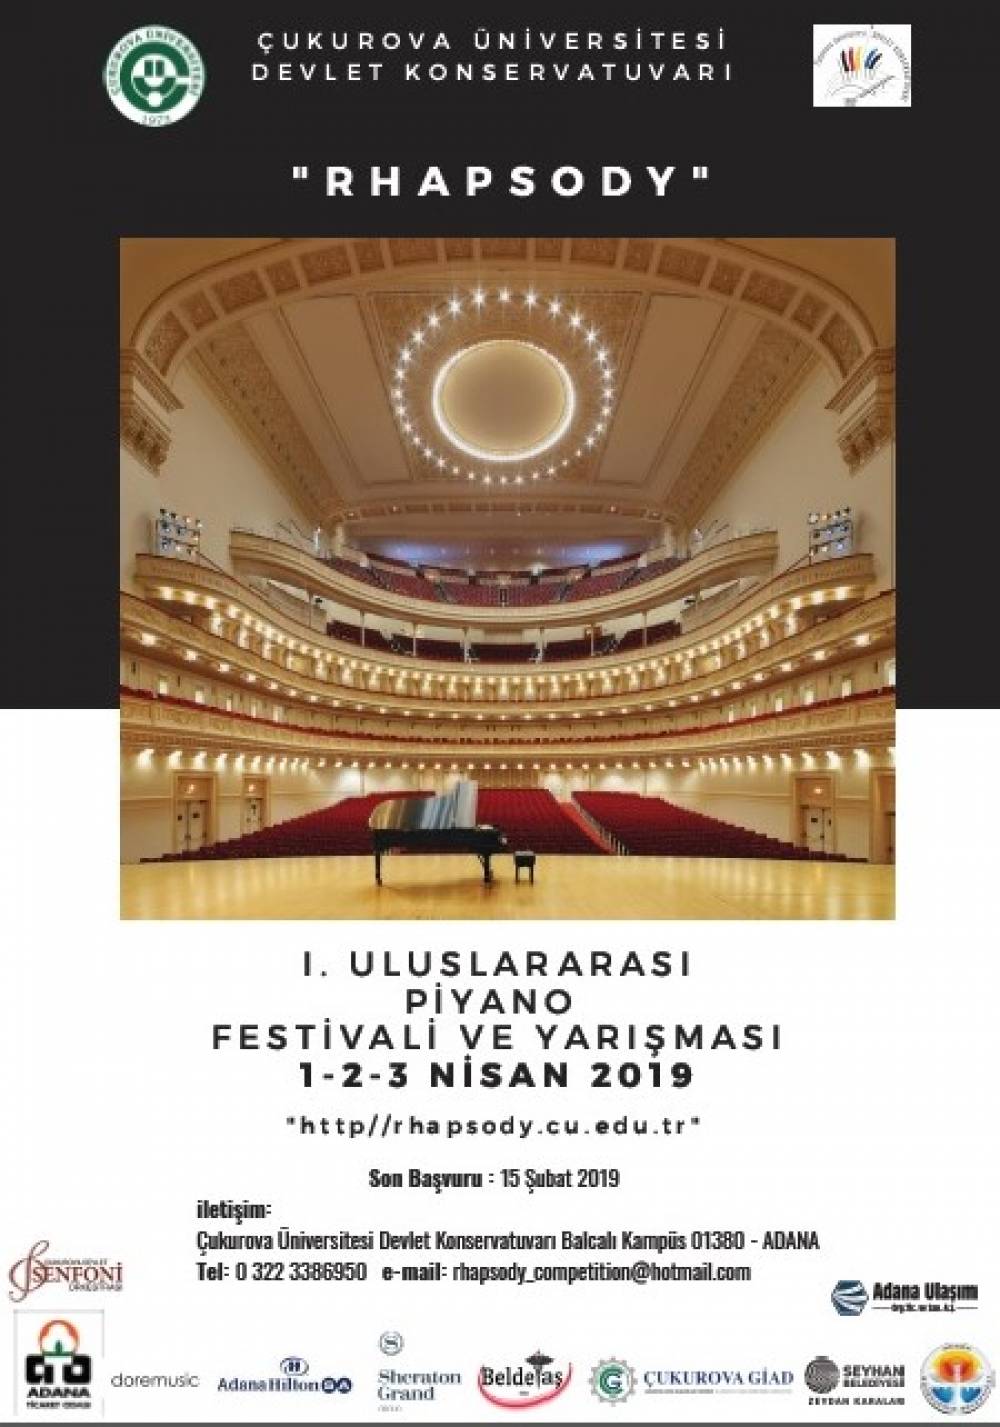 Çukurova Üniversitesi I. Uluslararası "Rhapsody" Piyano Festivali ve Yarışması Nisan Ayında Yapılacak